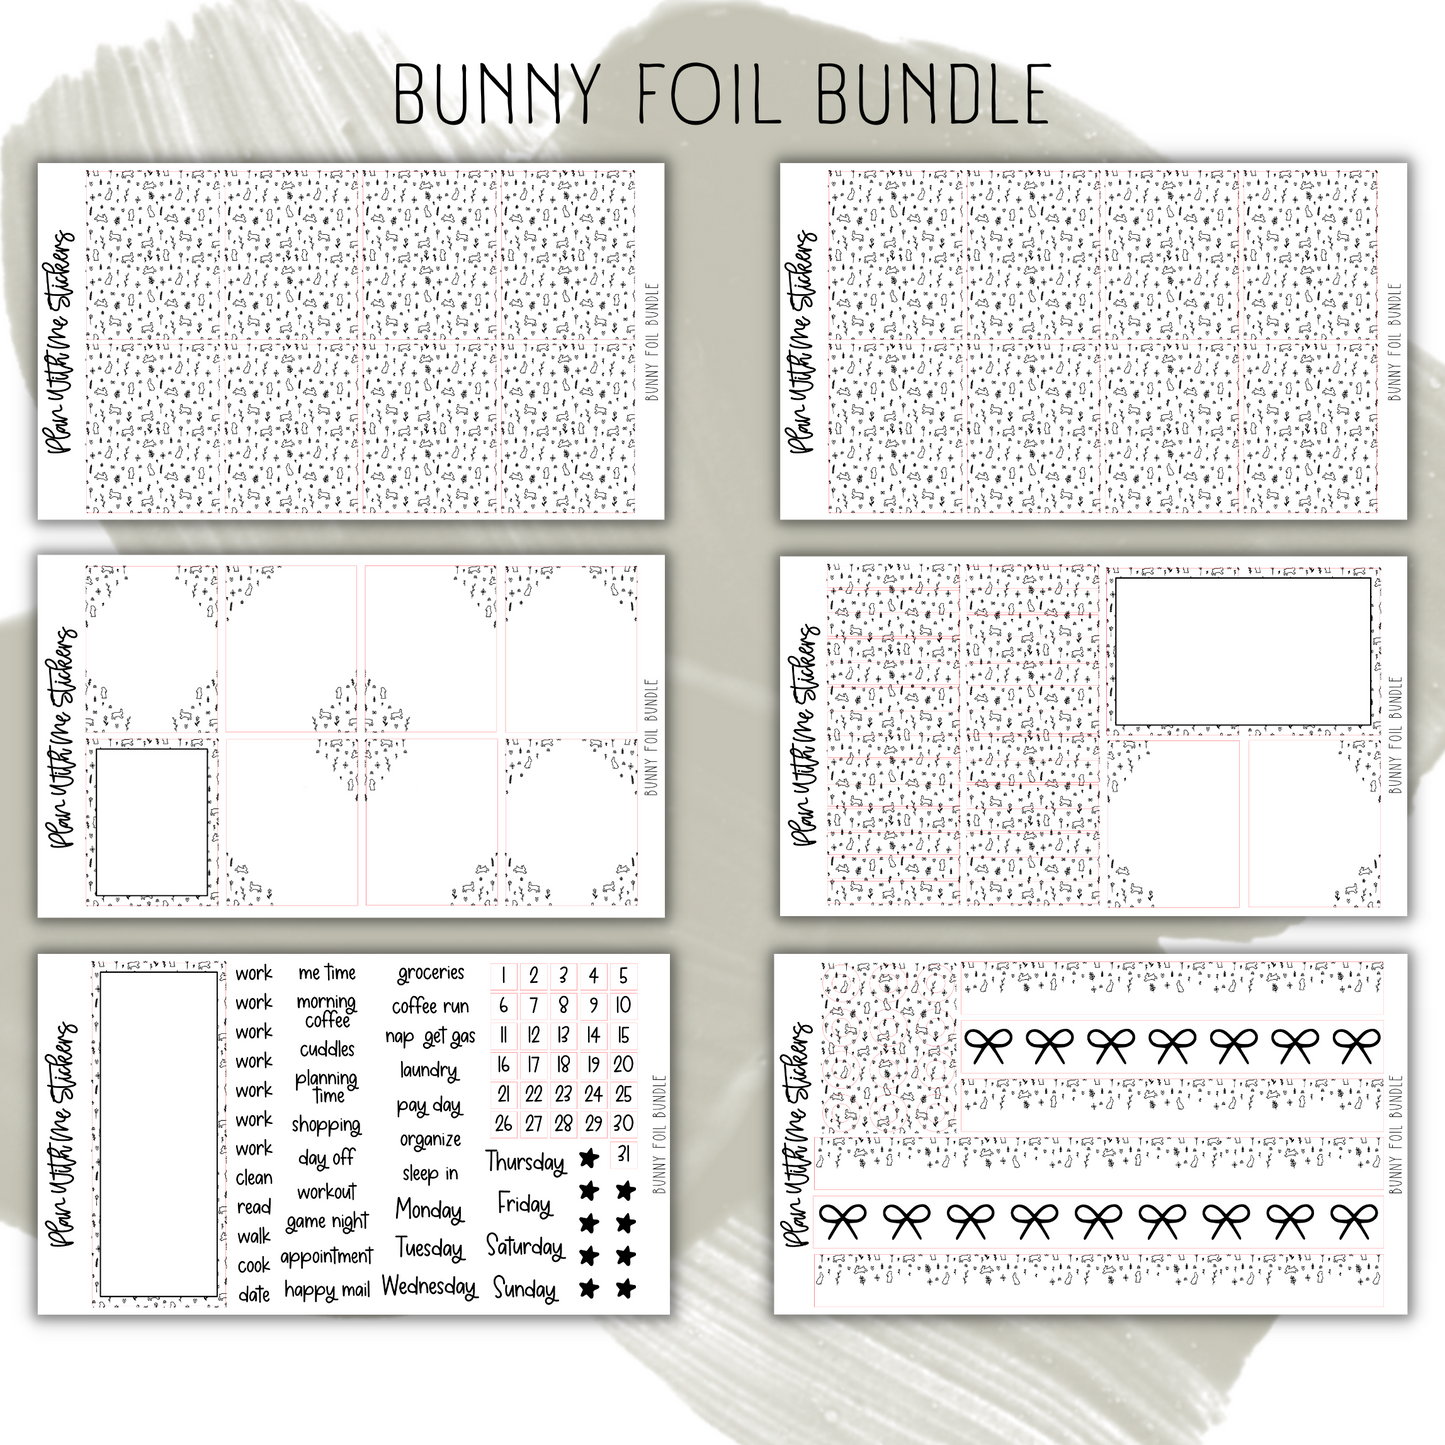 Bunny Foil Bundle